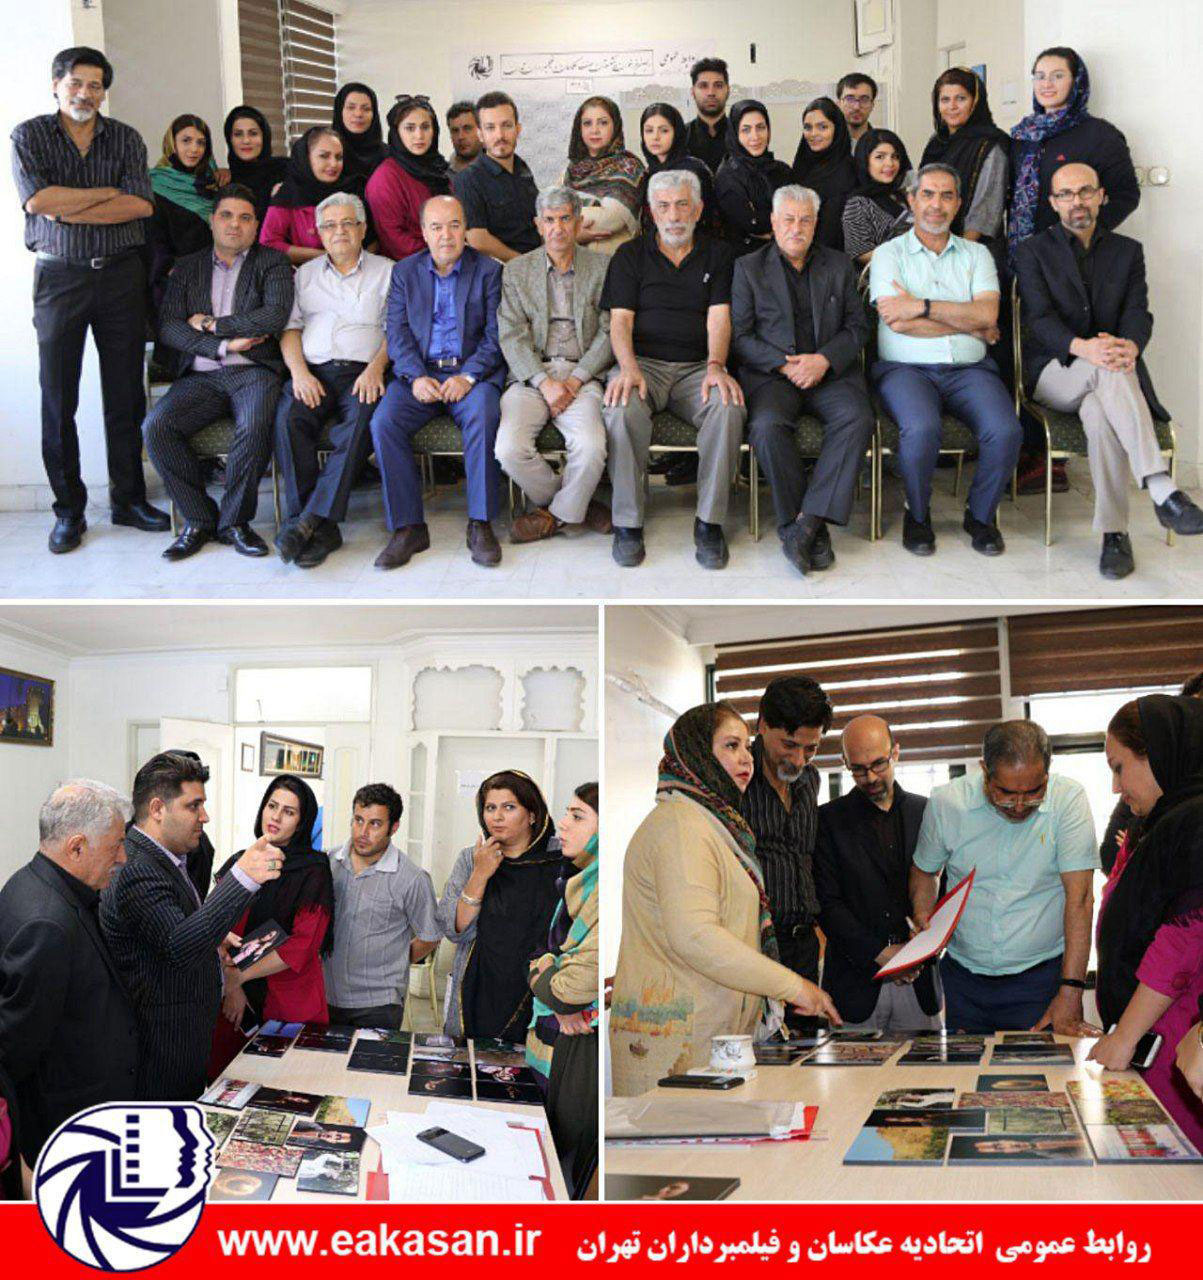 ژوژمان دوره سوم کلاس آموزش عکاسی استاد نوری مقدم  کمیسیون آموزش اتحادیه عکاسان و فیلمبرداران تهران